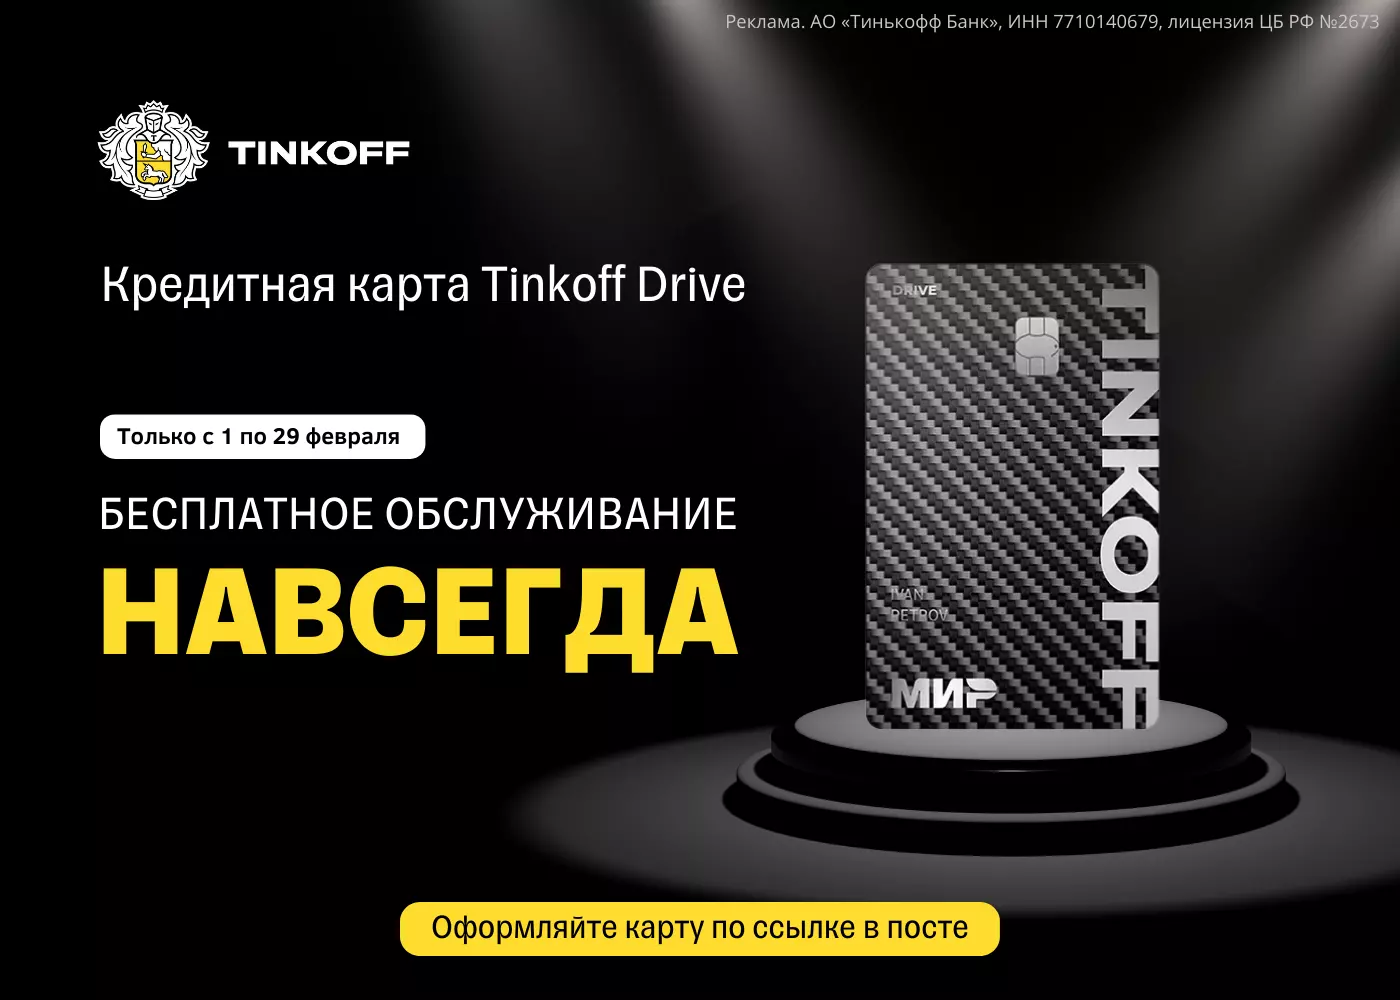 кредитная карта тинькофф drive с бесплатным обслуживанием НАВСЕГДА